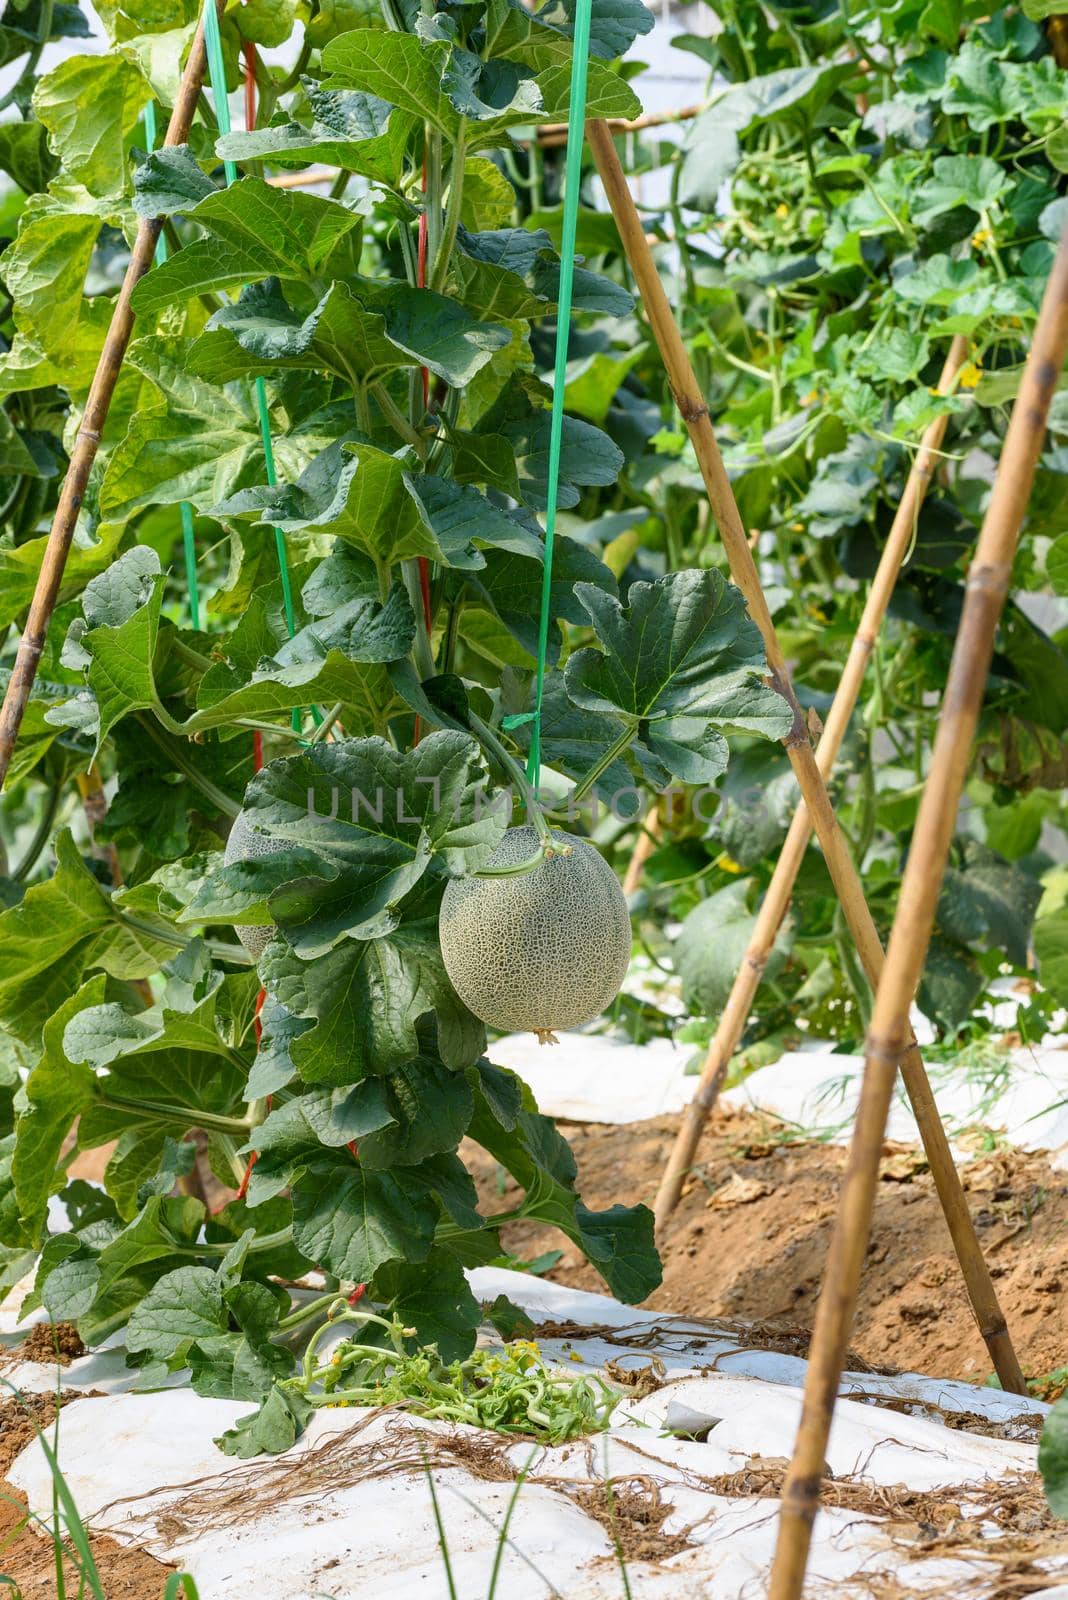 Melon Pot Orange farm field in Thailand by Yongkiet